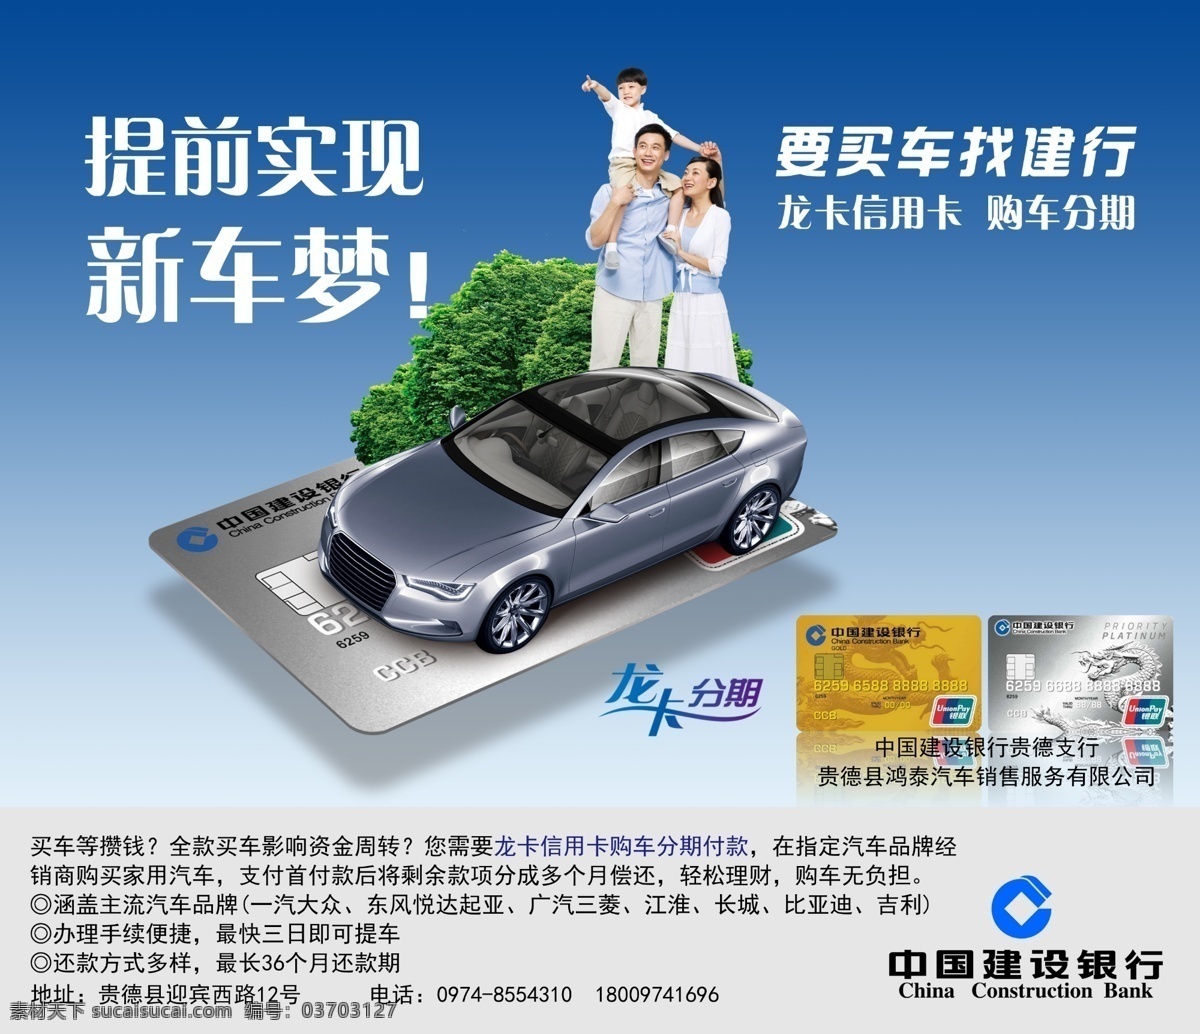 建行 购车 分期付款 中国建设银行 龙卡分期 购车分期 龙卡信用卡 人物 汽车 分层 广告设计模板 源文件